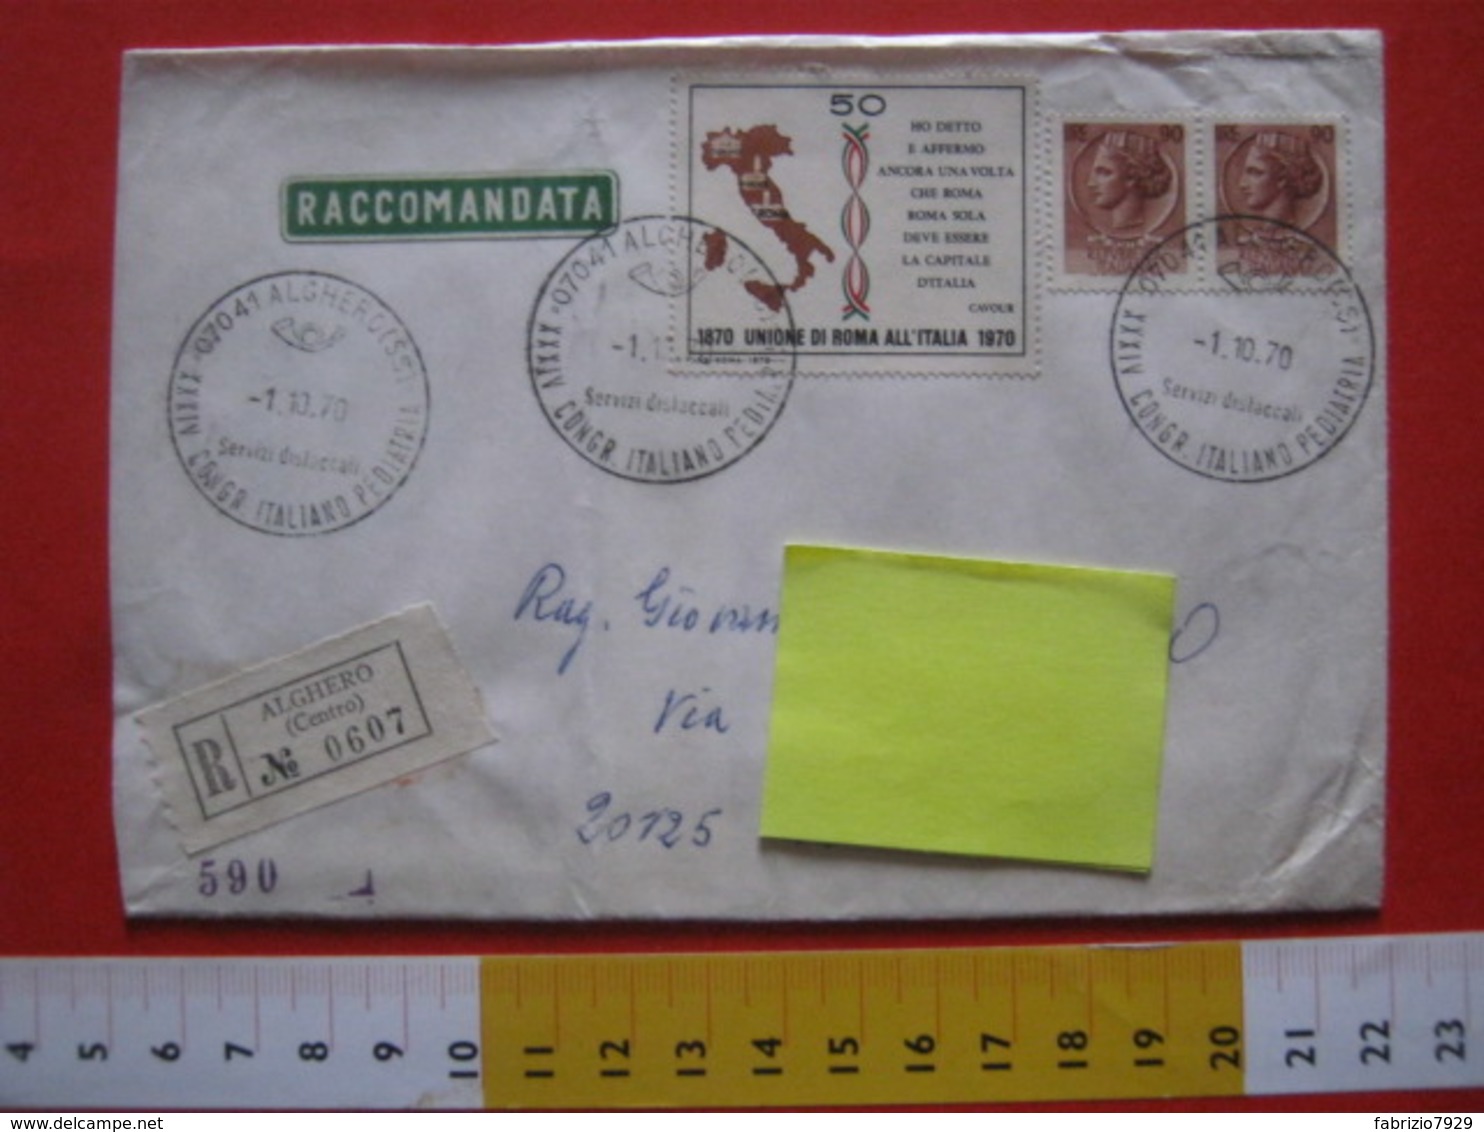 A.10 ITALIA ANNULLO CANCEL RARA RACCOMANDATA - 1970 ALGHERO SASSARI CONGRESSO ITALIANO PEDIATRIA BAMBINI CHILDREN DOCTOR - Medicina